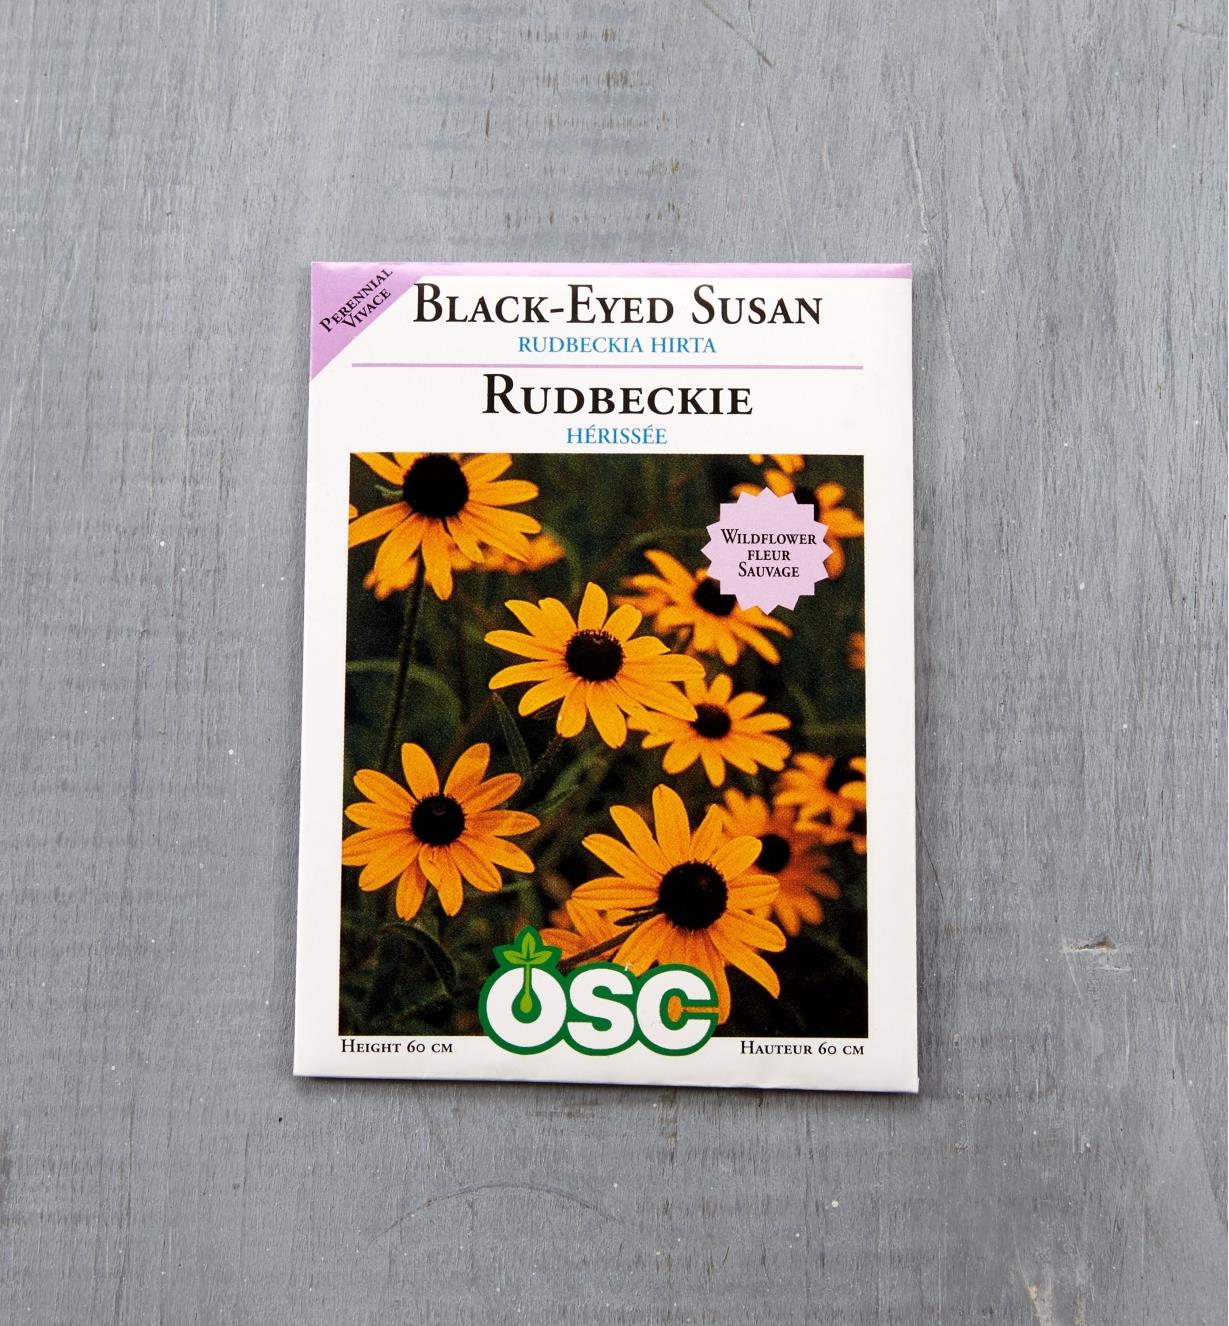 SD147 - Black-Eyed Susan